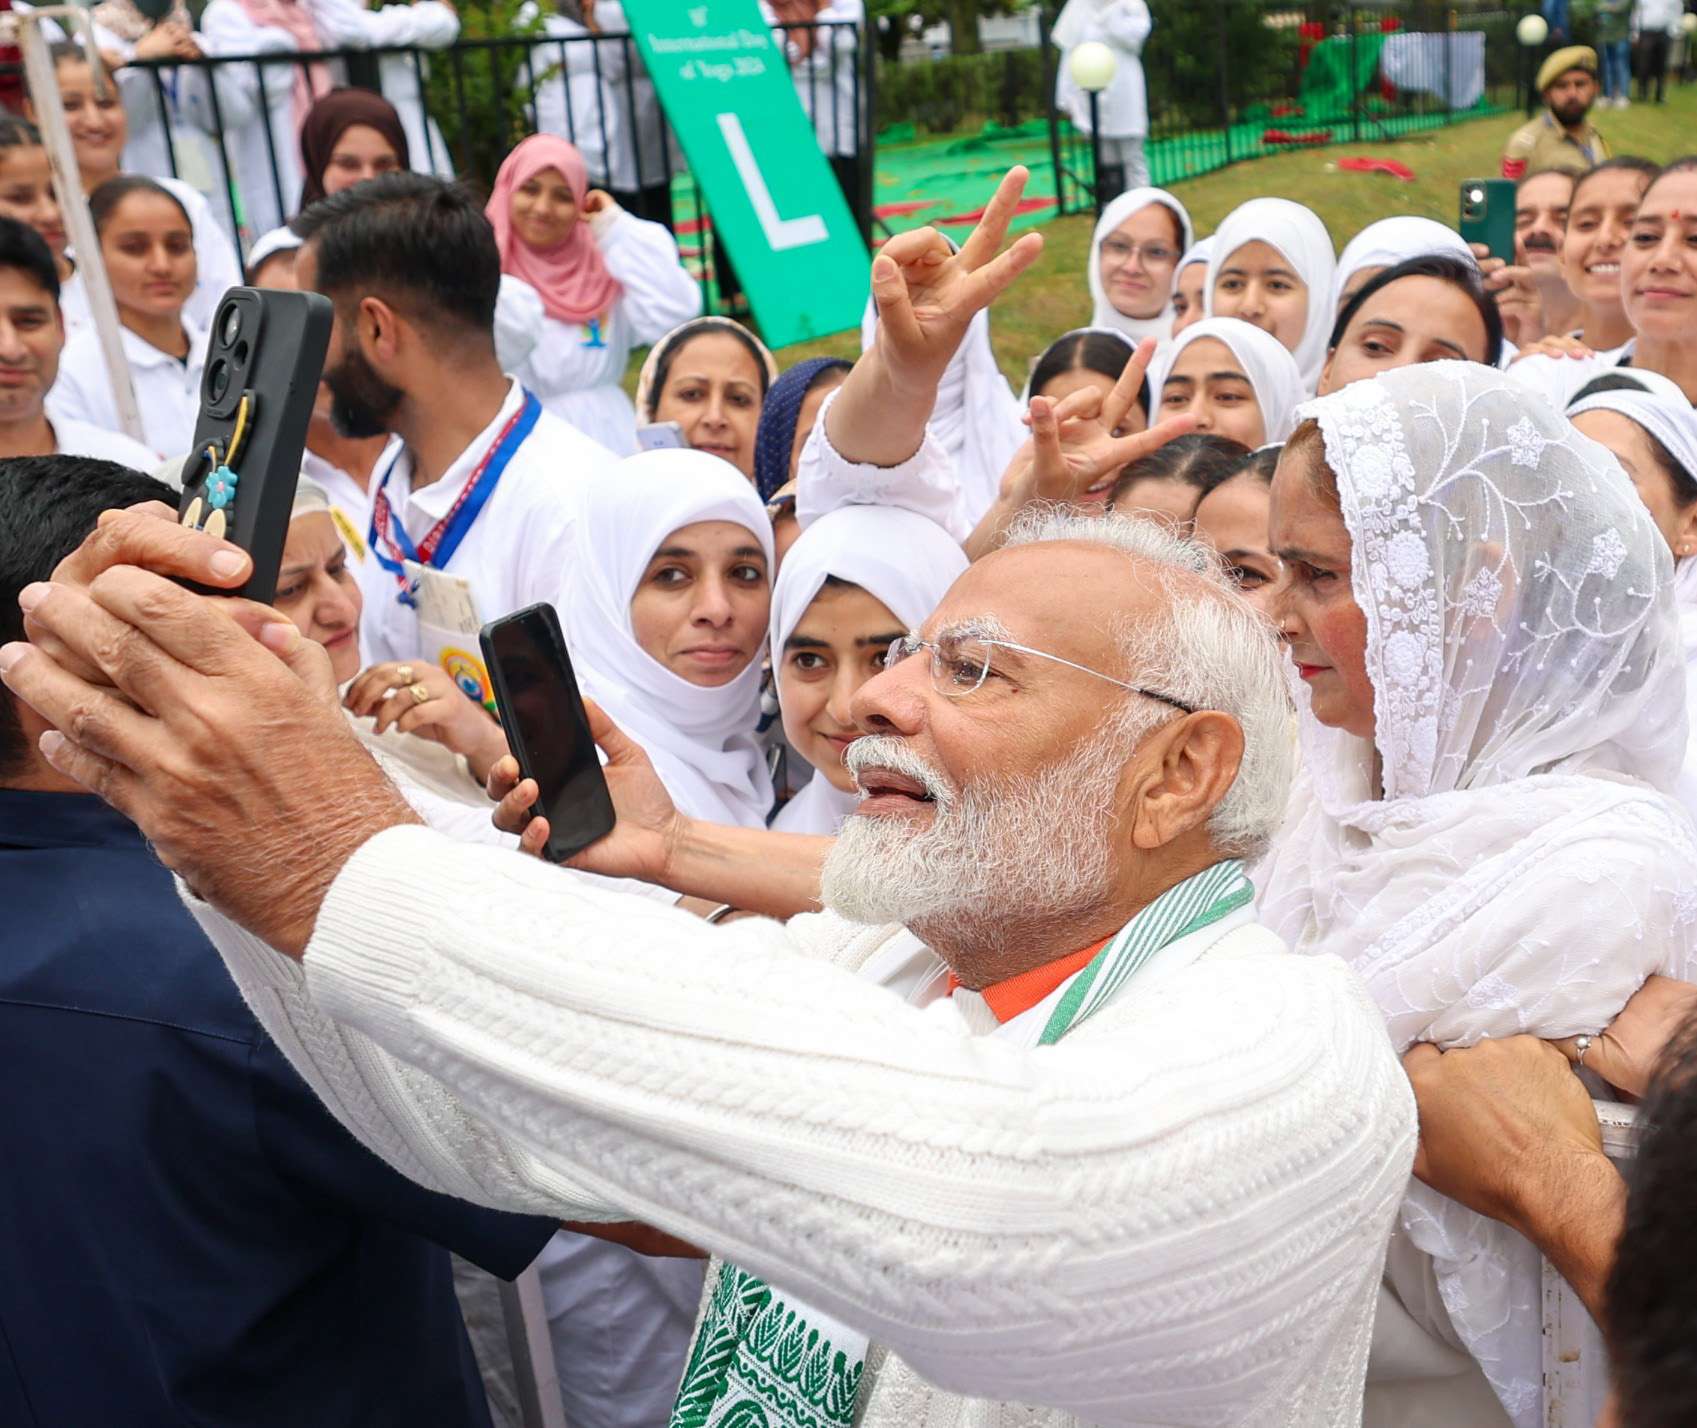 प्रधानमंत्री श्री नरेन्द्र मोदी ने श्रीनगर की डल झील में योग प्रेमियों के साथ तस्वीरें खिंचवाईं